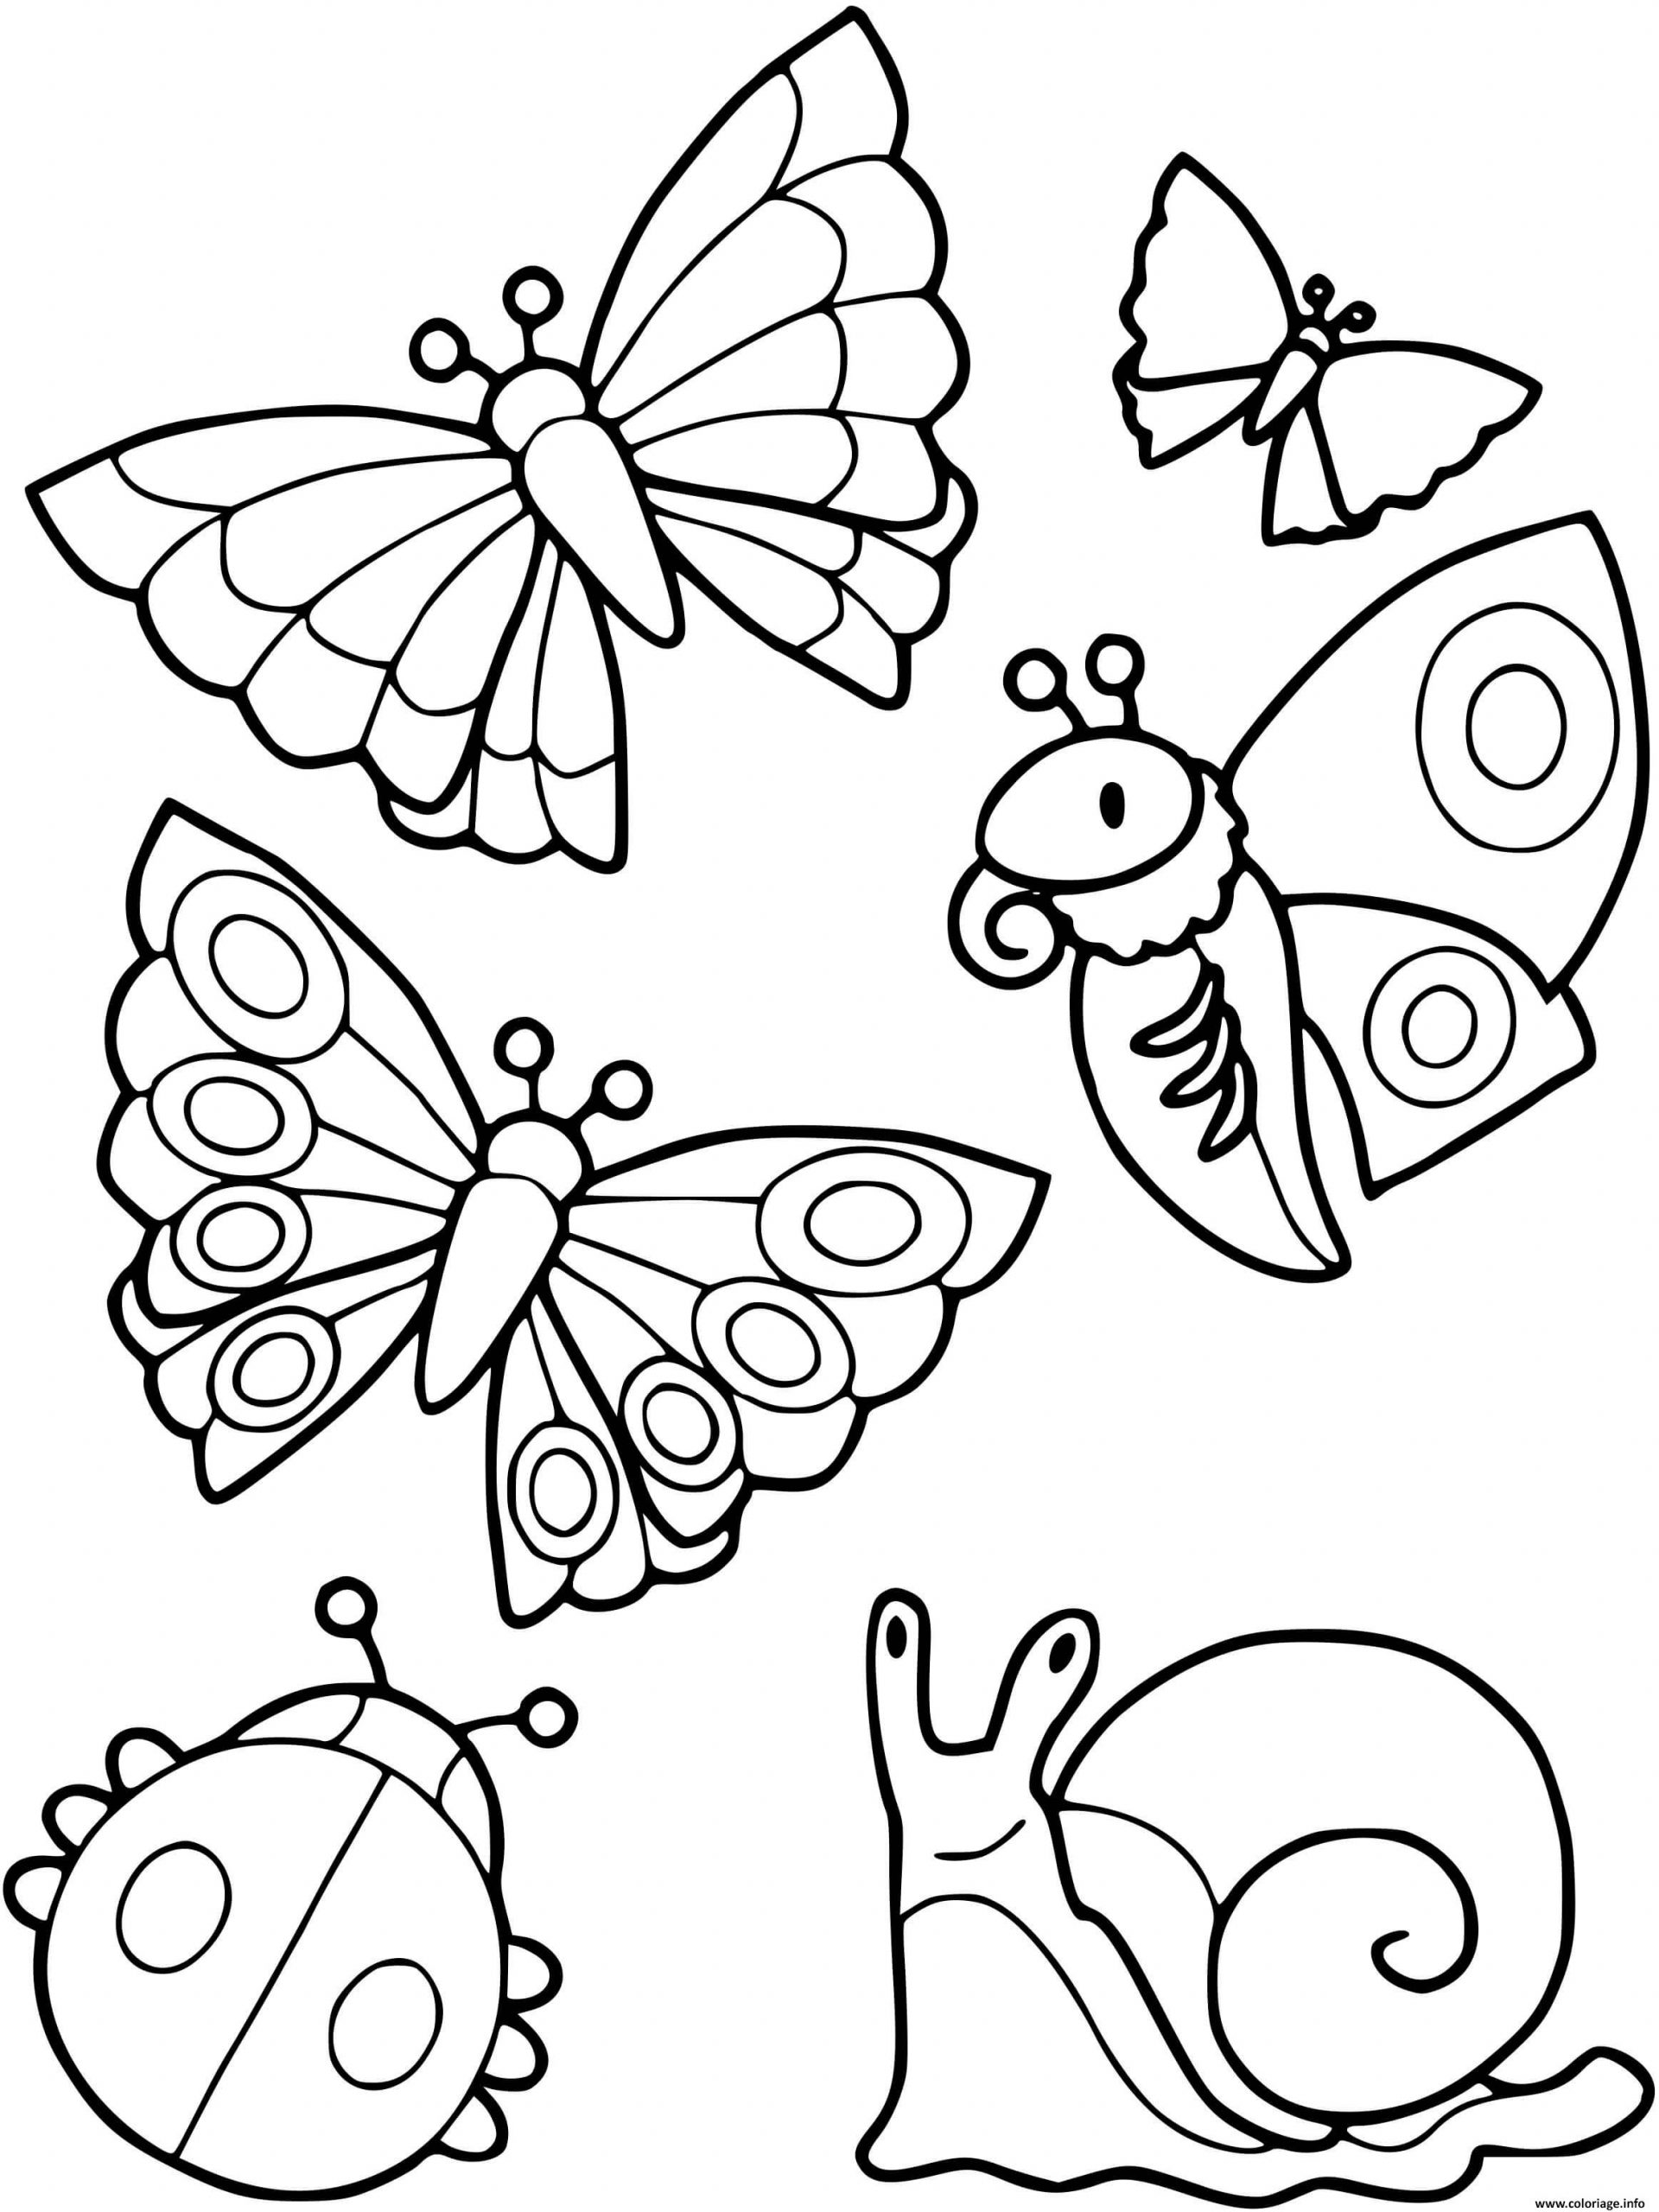 Coloriage Collection De Petites Betes Escargot Papillon à Coloriage De Papillons 